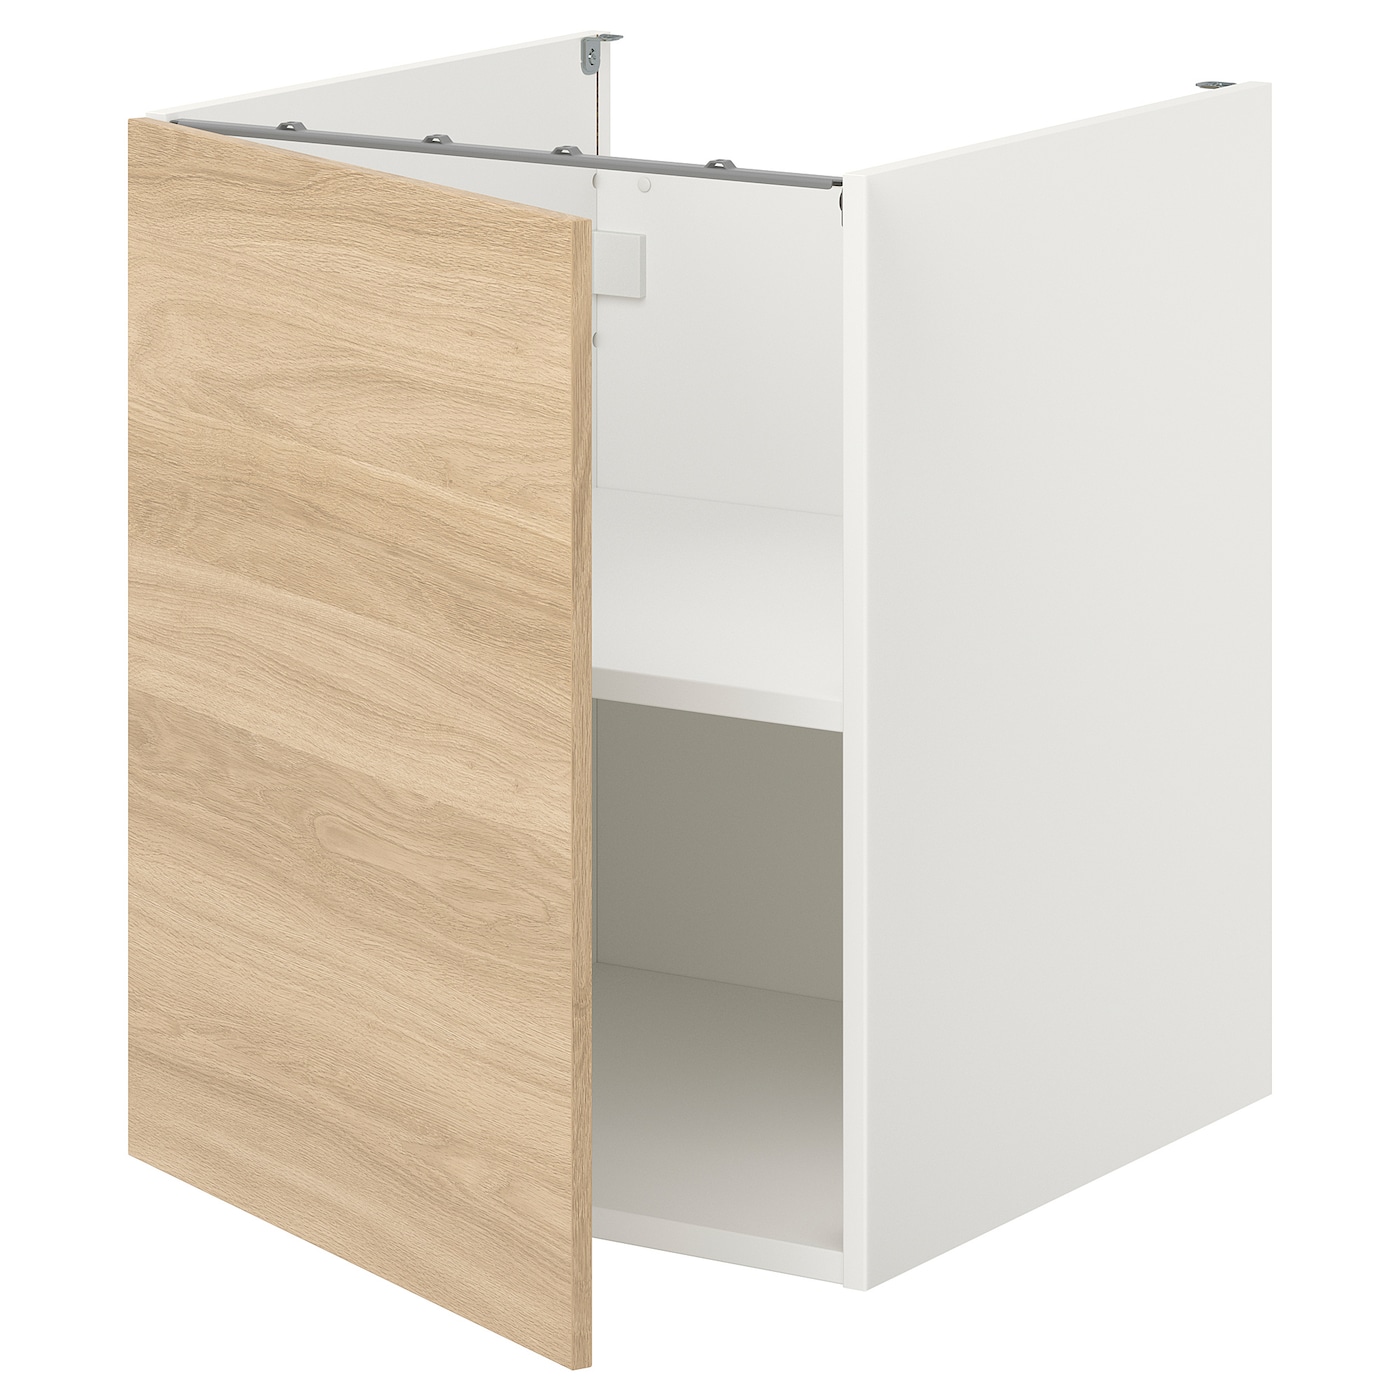 Шкаф с дверцами - IKEA ENHET, 75x62x60см, коричневый/светло-коричневый, ЭНХЕТ ИКЕА